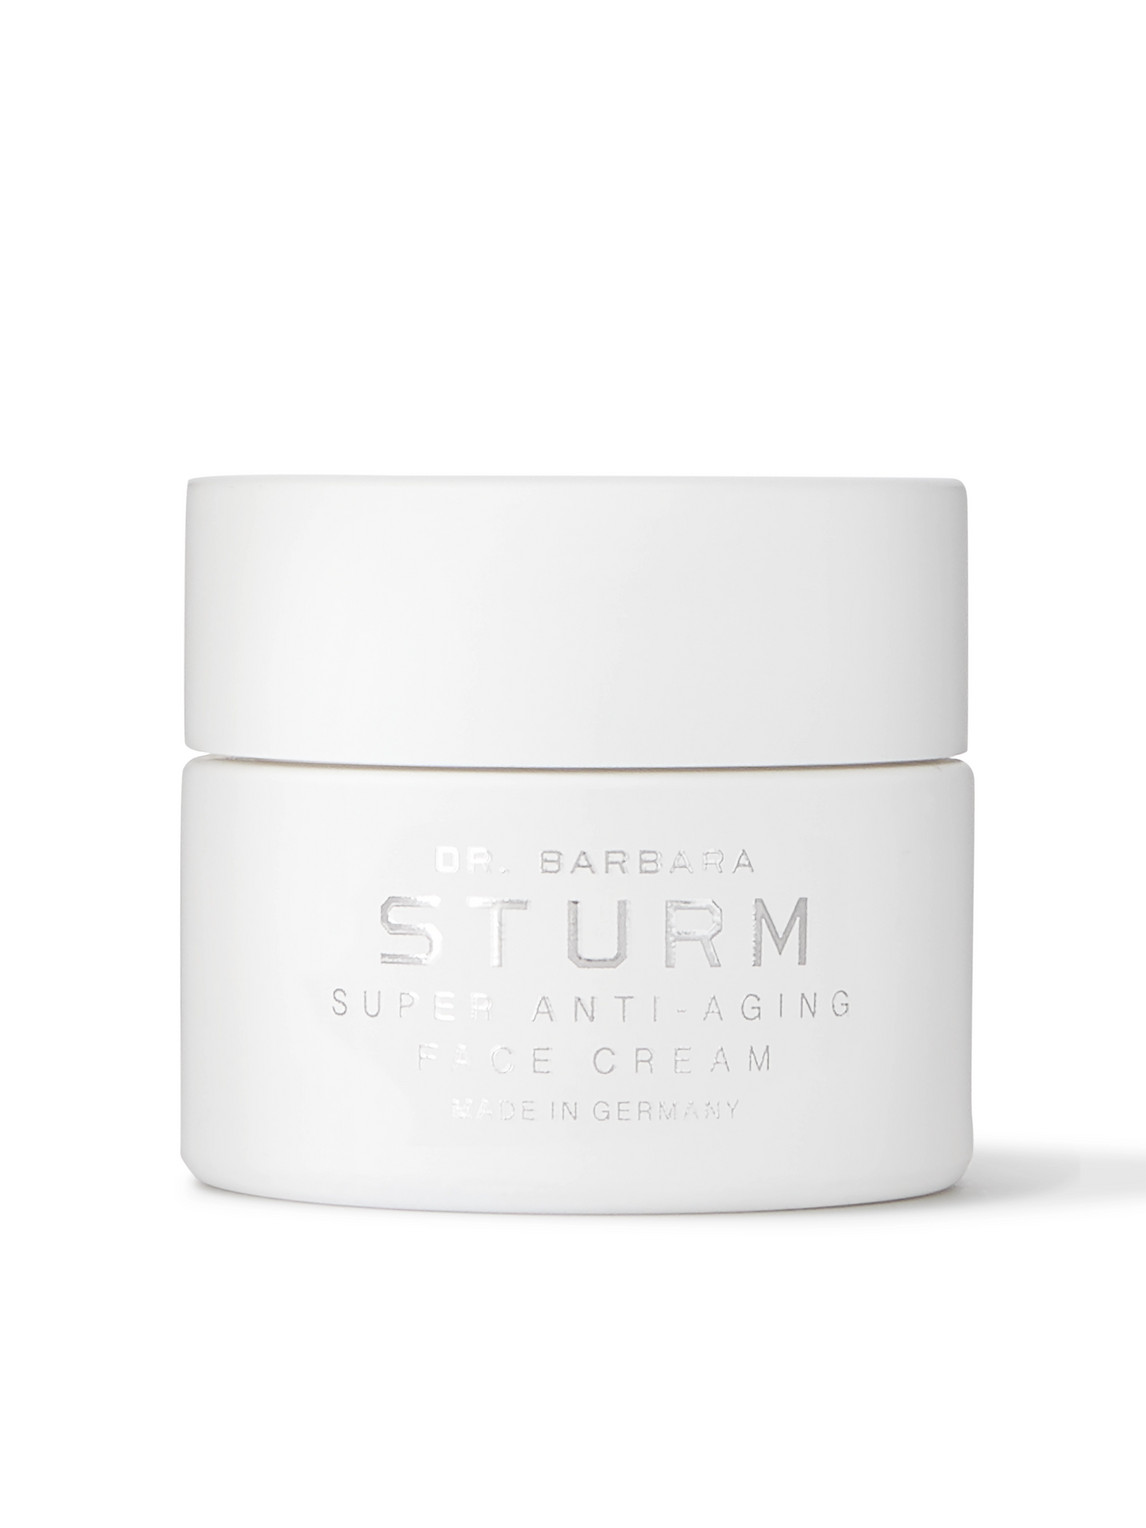 Super Anti-Aging Face Cream, 50ml